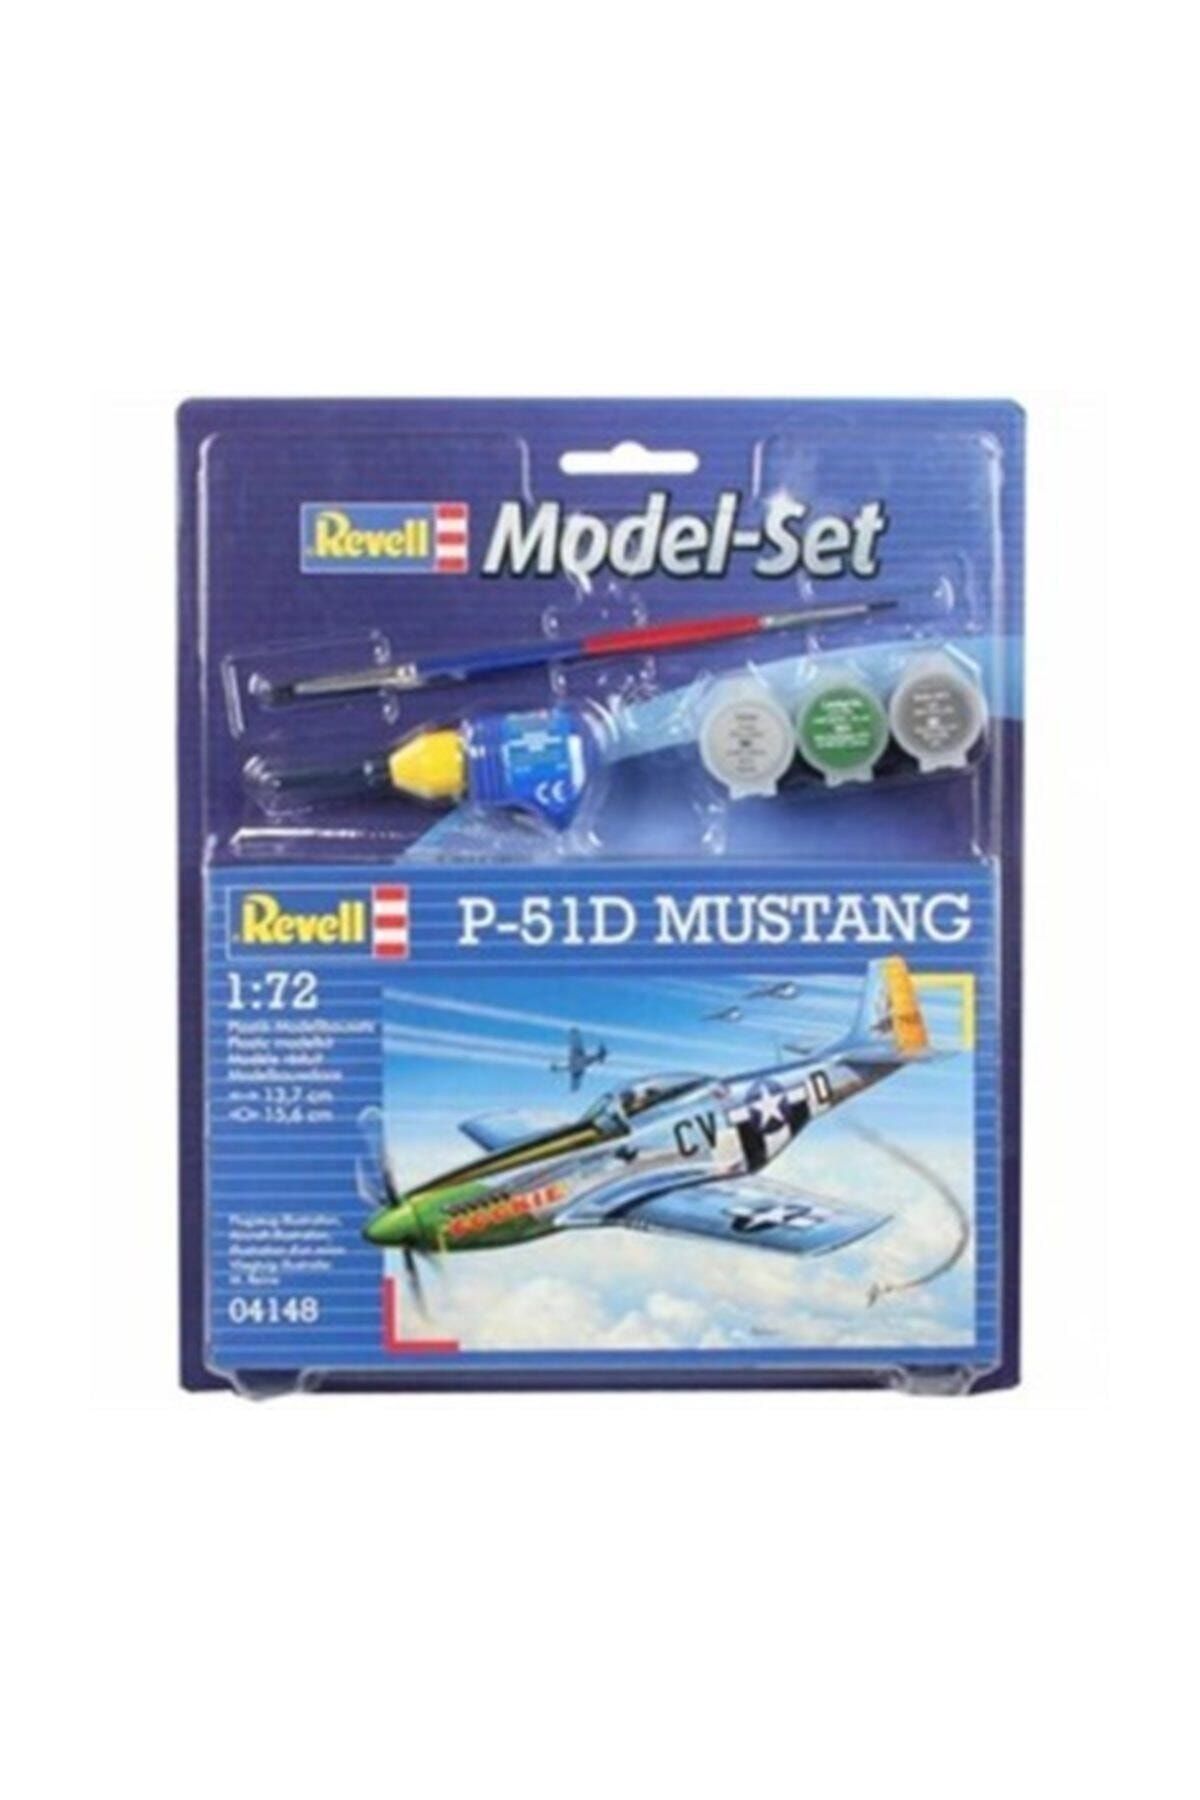 REVELL Model Set P-51D Mustang-64148